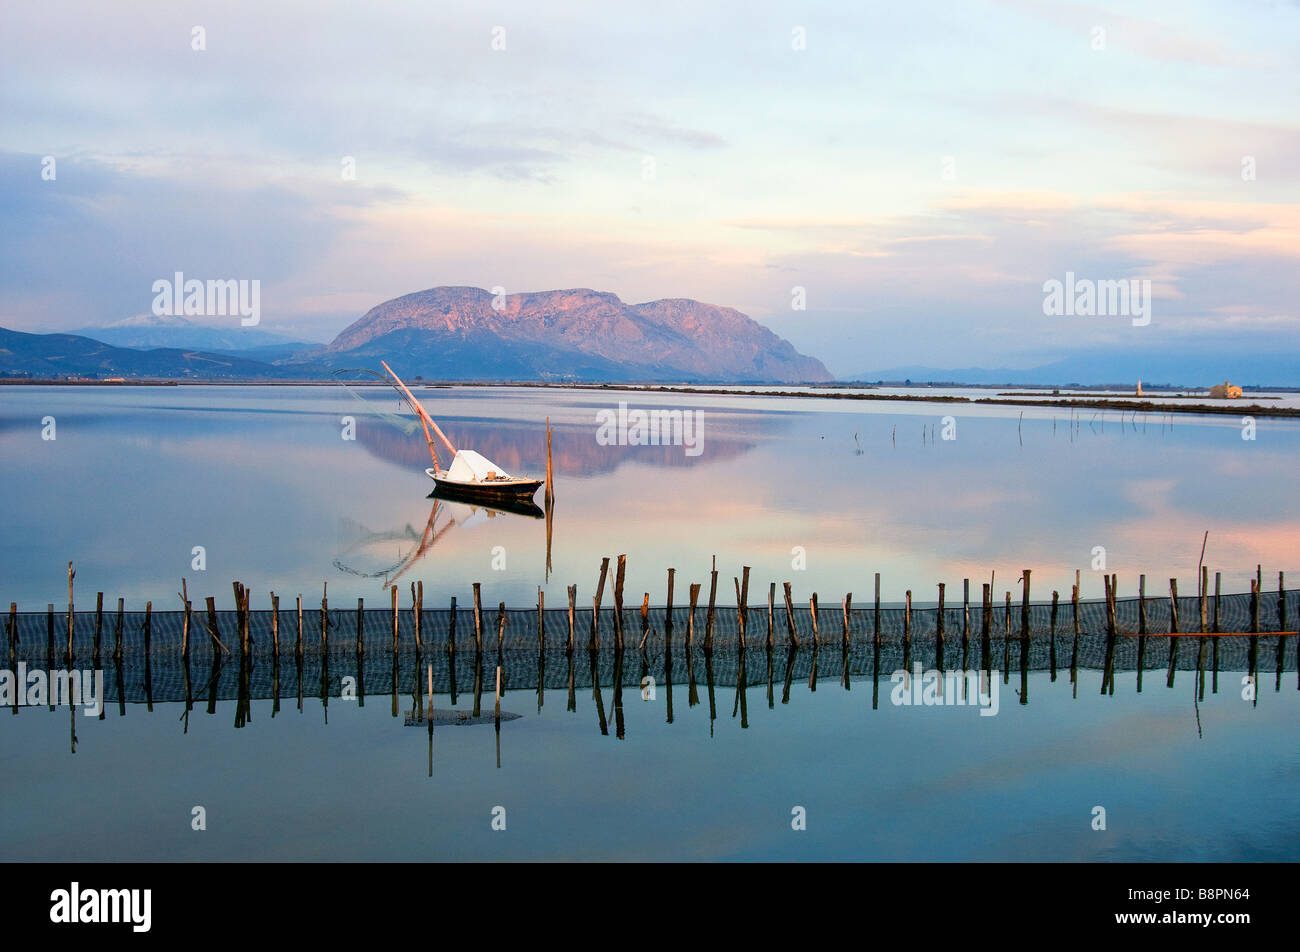 Amanecer en el paisaje Mesologi- pequeño barco de pesca blanca de madera descansa en las tranquilas aguas de la laguna. Foto de stock